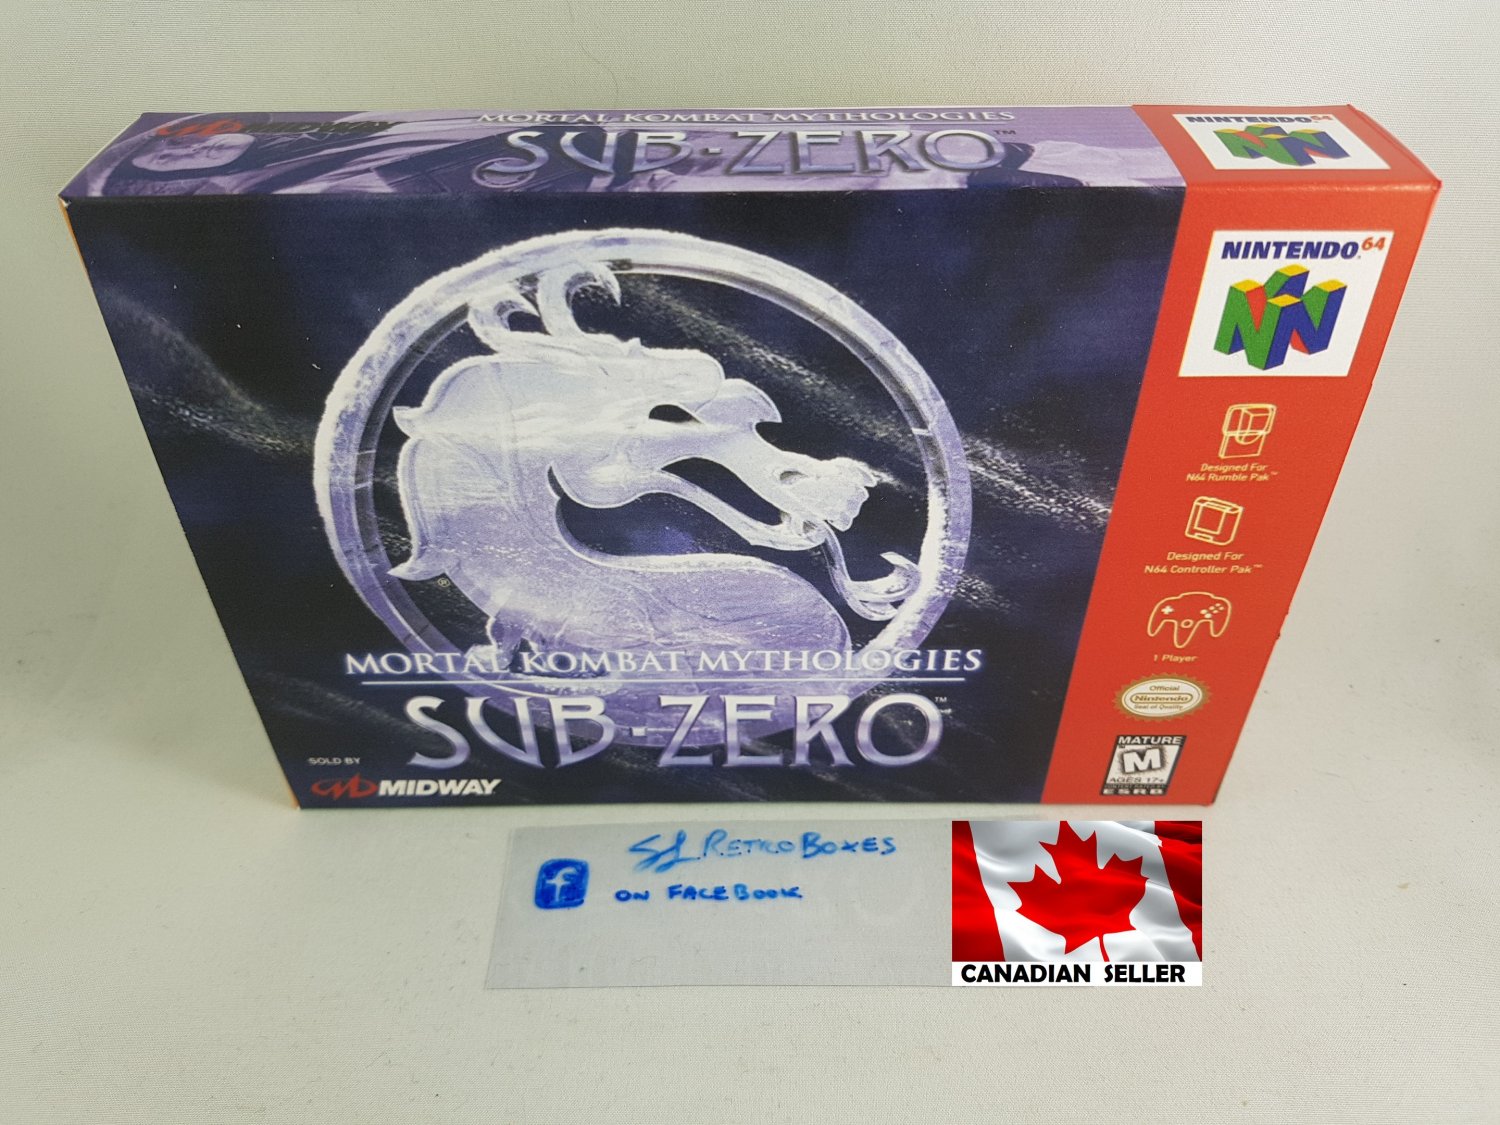 MORTAL KOMBAT MYTHOLOGIES SUB-ZERO - N64, Nintendo64 Custom Box w/ Insert Tray & PVC Protector